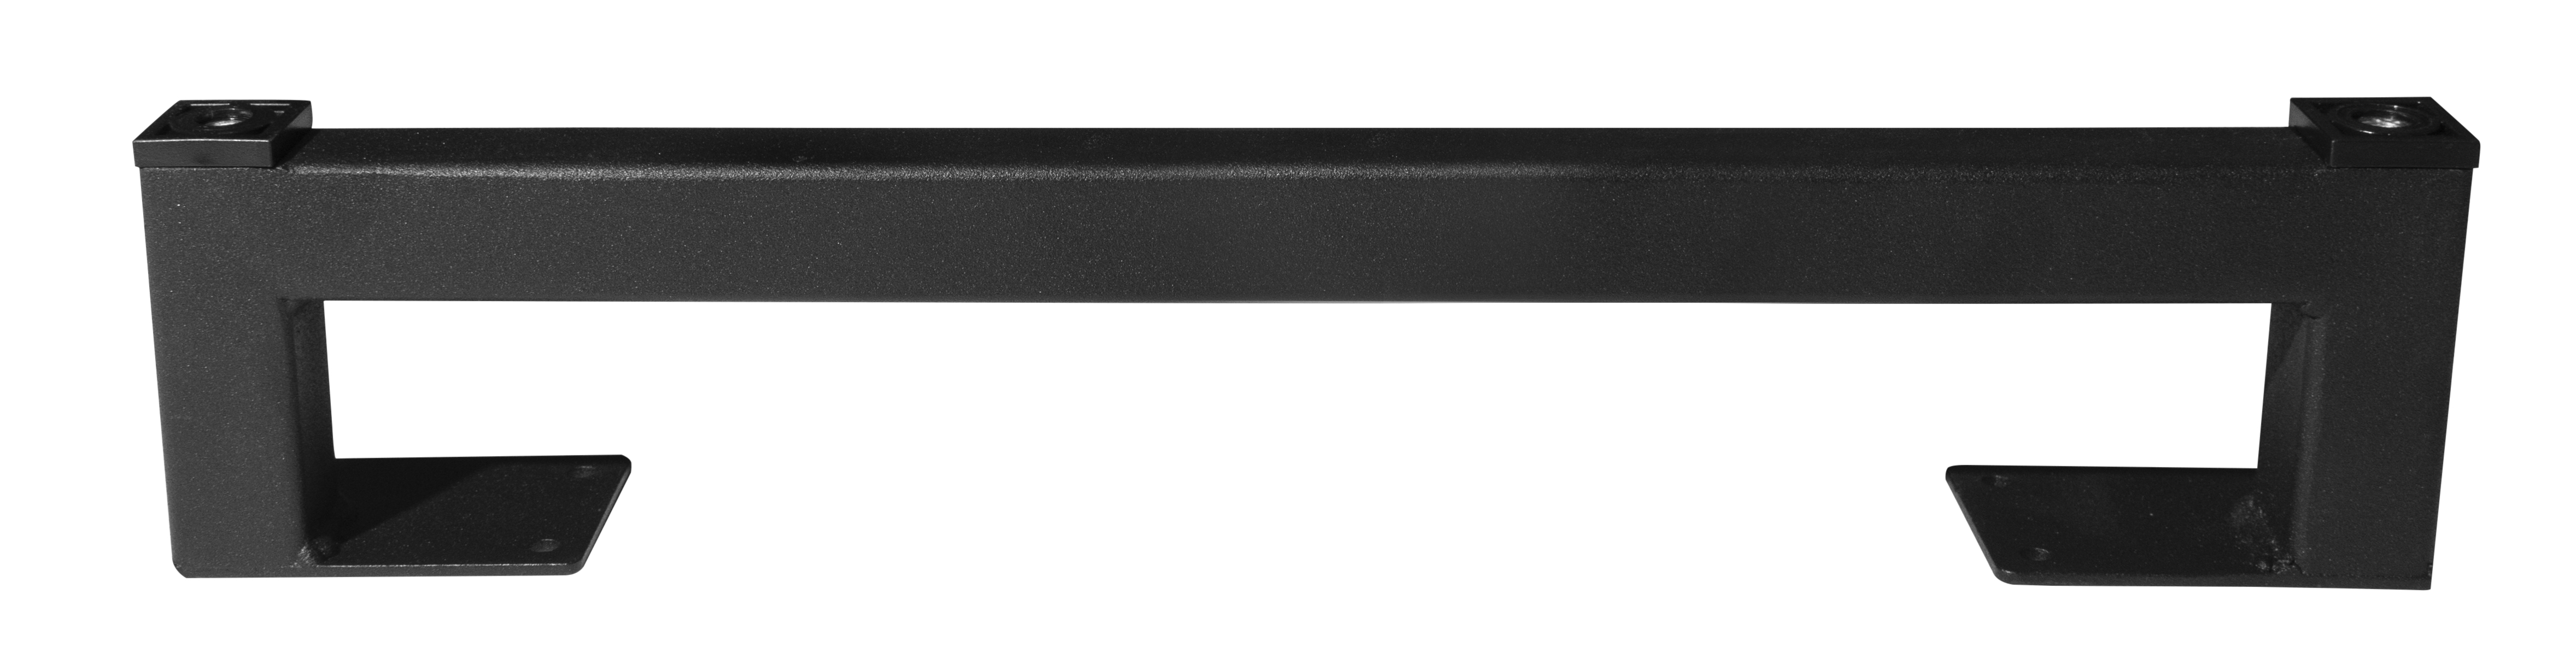 Ножка для мебели LOFT 395х80,цвет черный